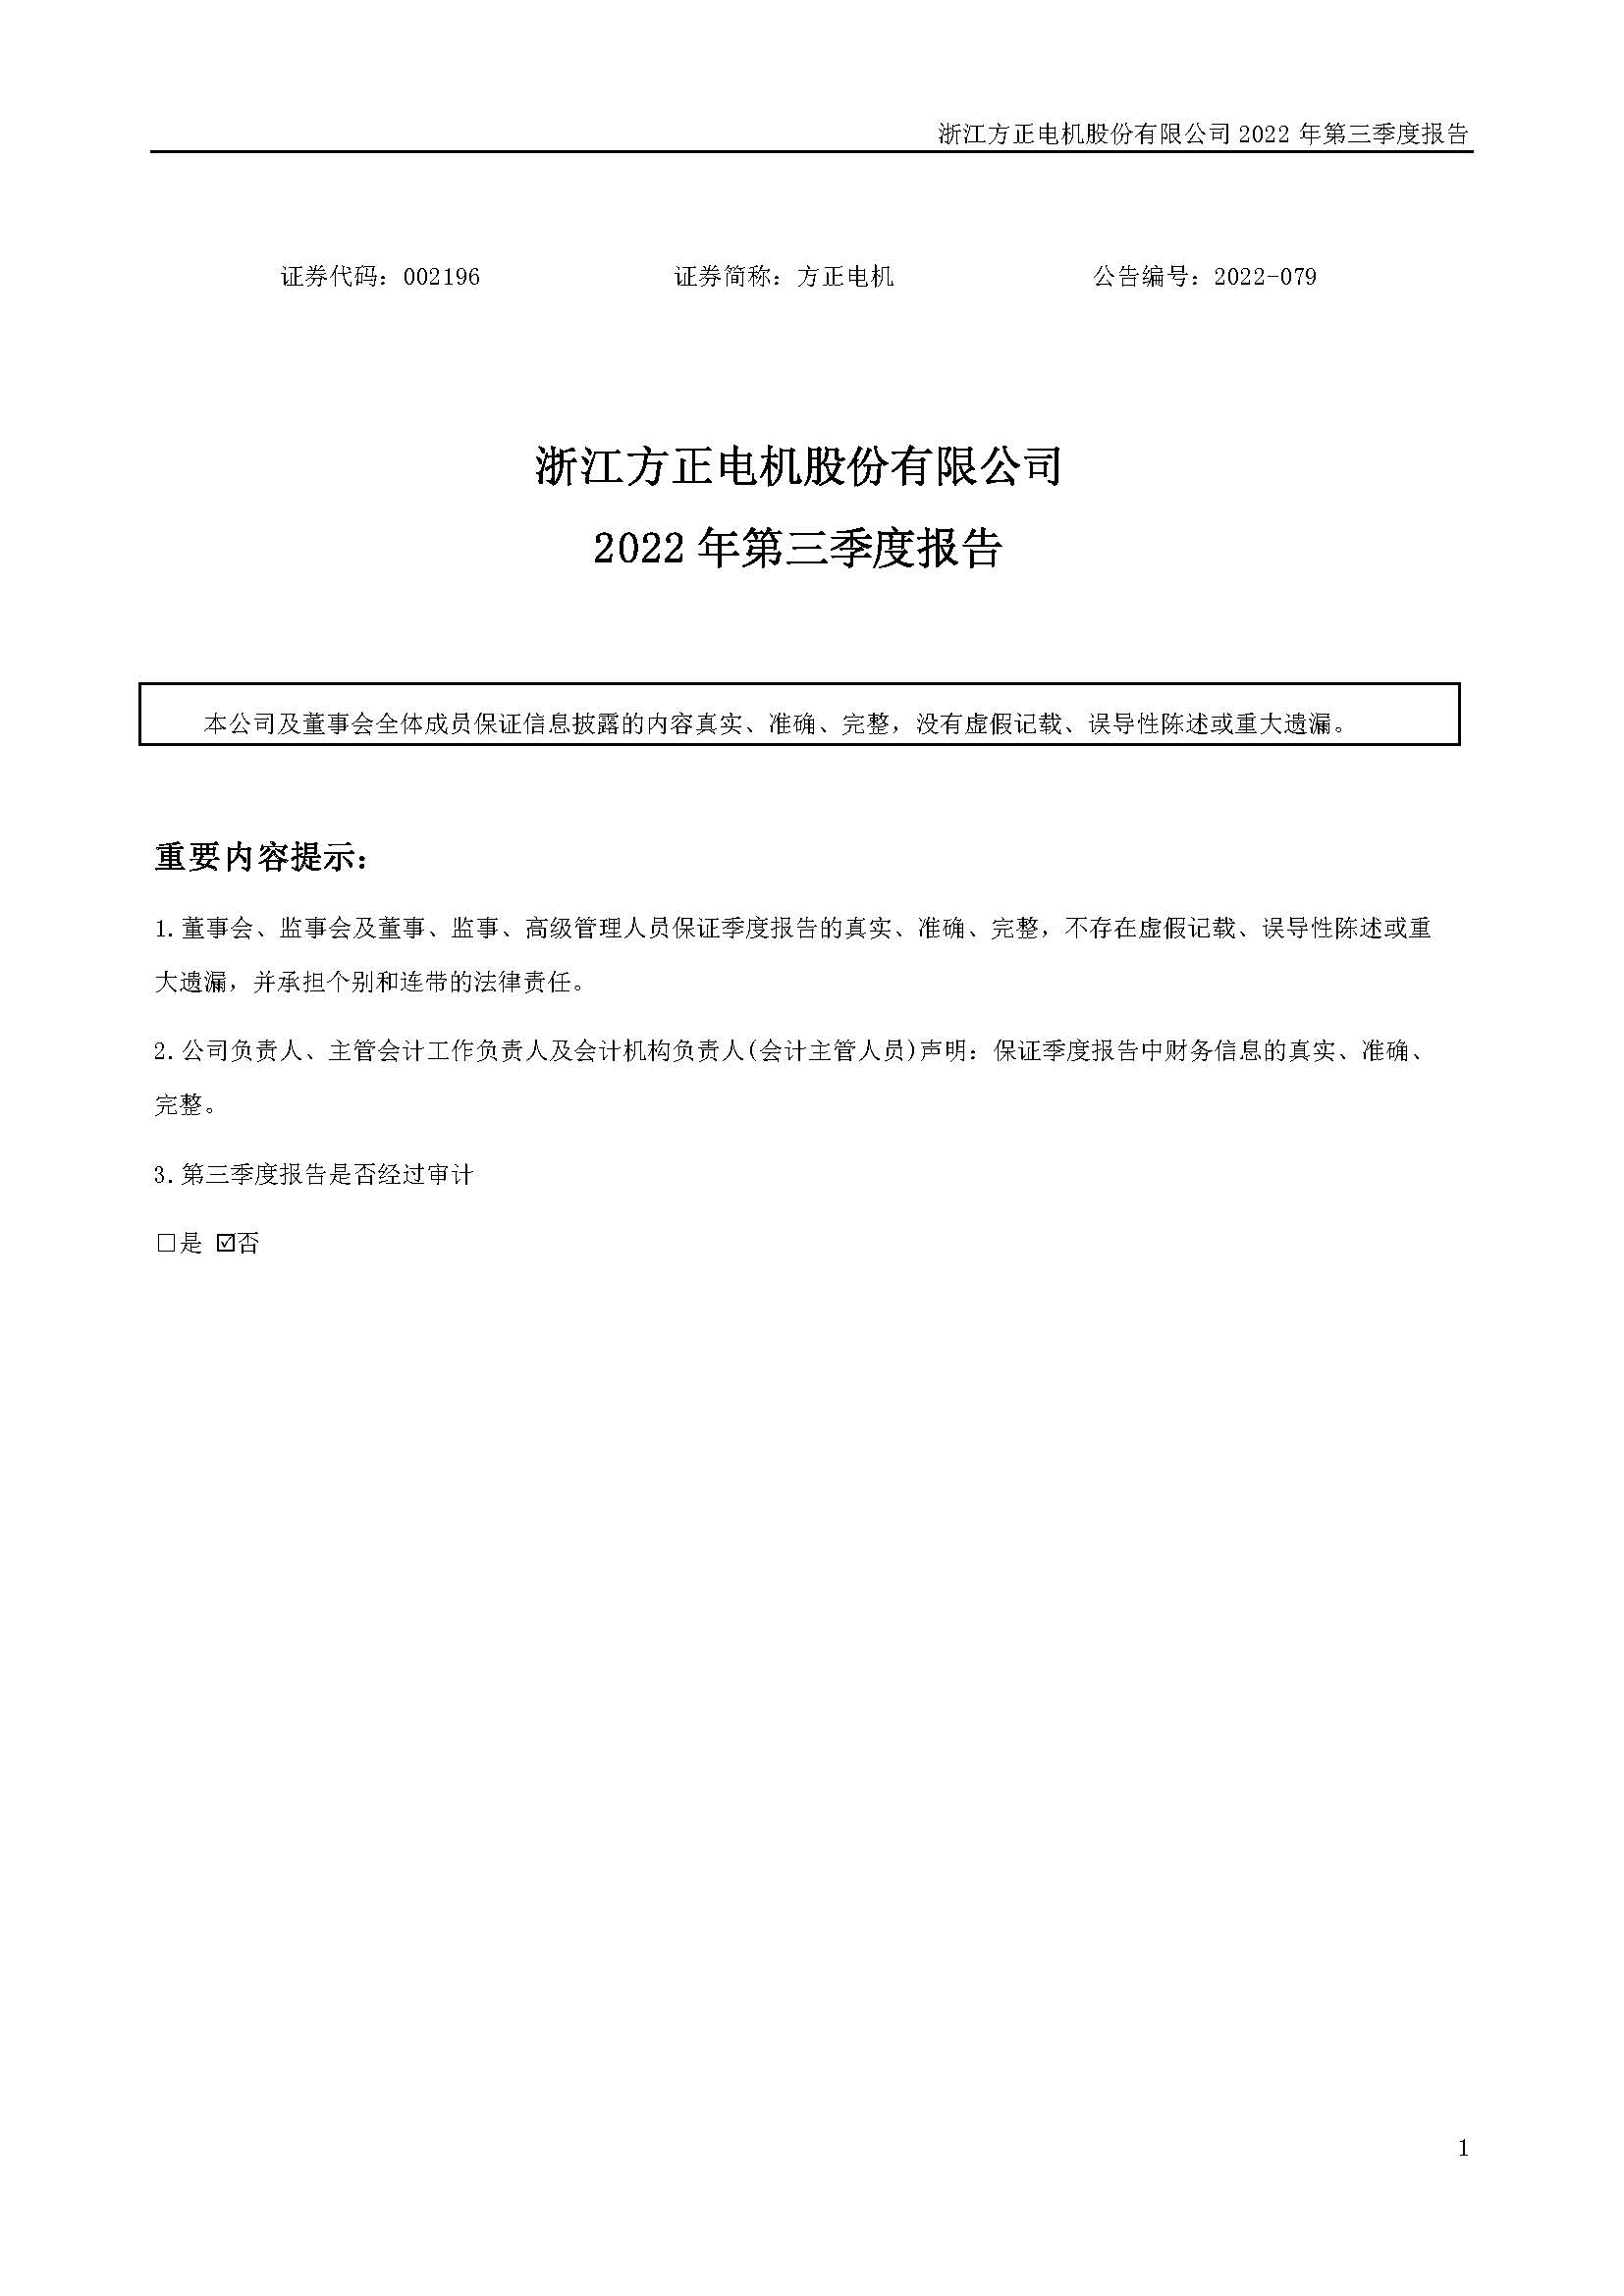 浙江方正電機股份有限公司2022 年第三季度報告_頁面_01